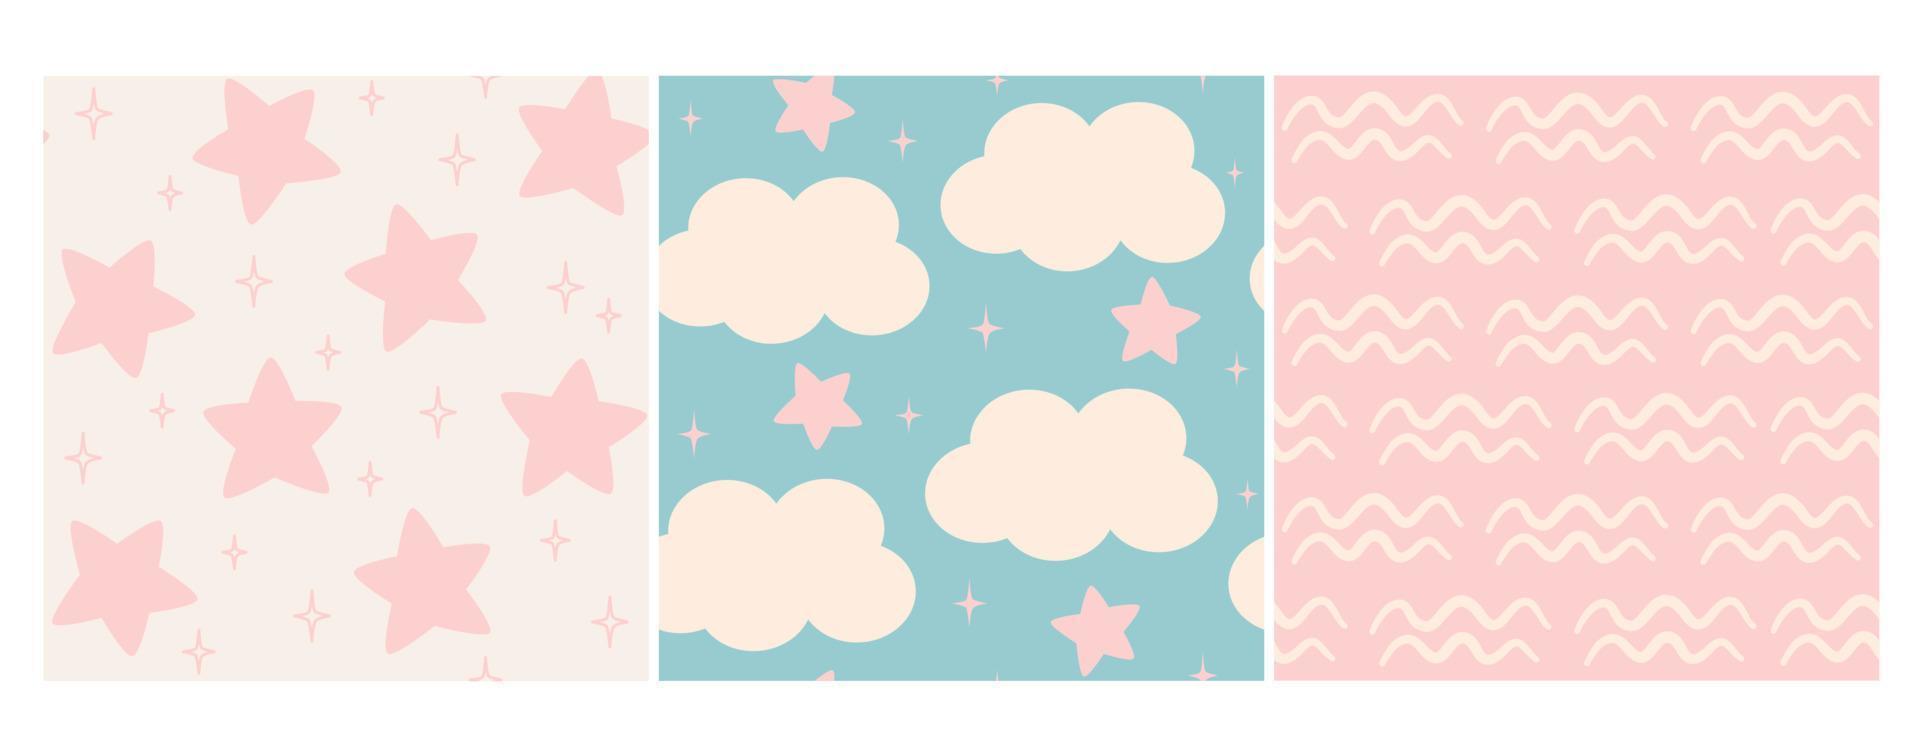 süß schön Pastell- Rosa und Blau Hand gezeichnet einstellen von nahtlos Vektor Muster Hintergrund Illustration mit Sterne und Wolken zum Kinder, Baby Dusche und Andere